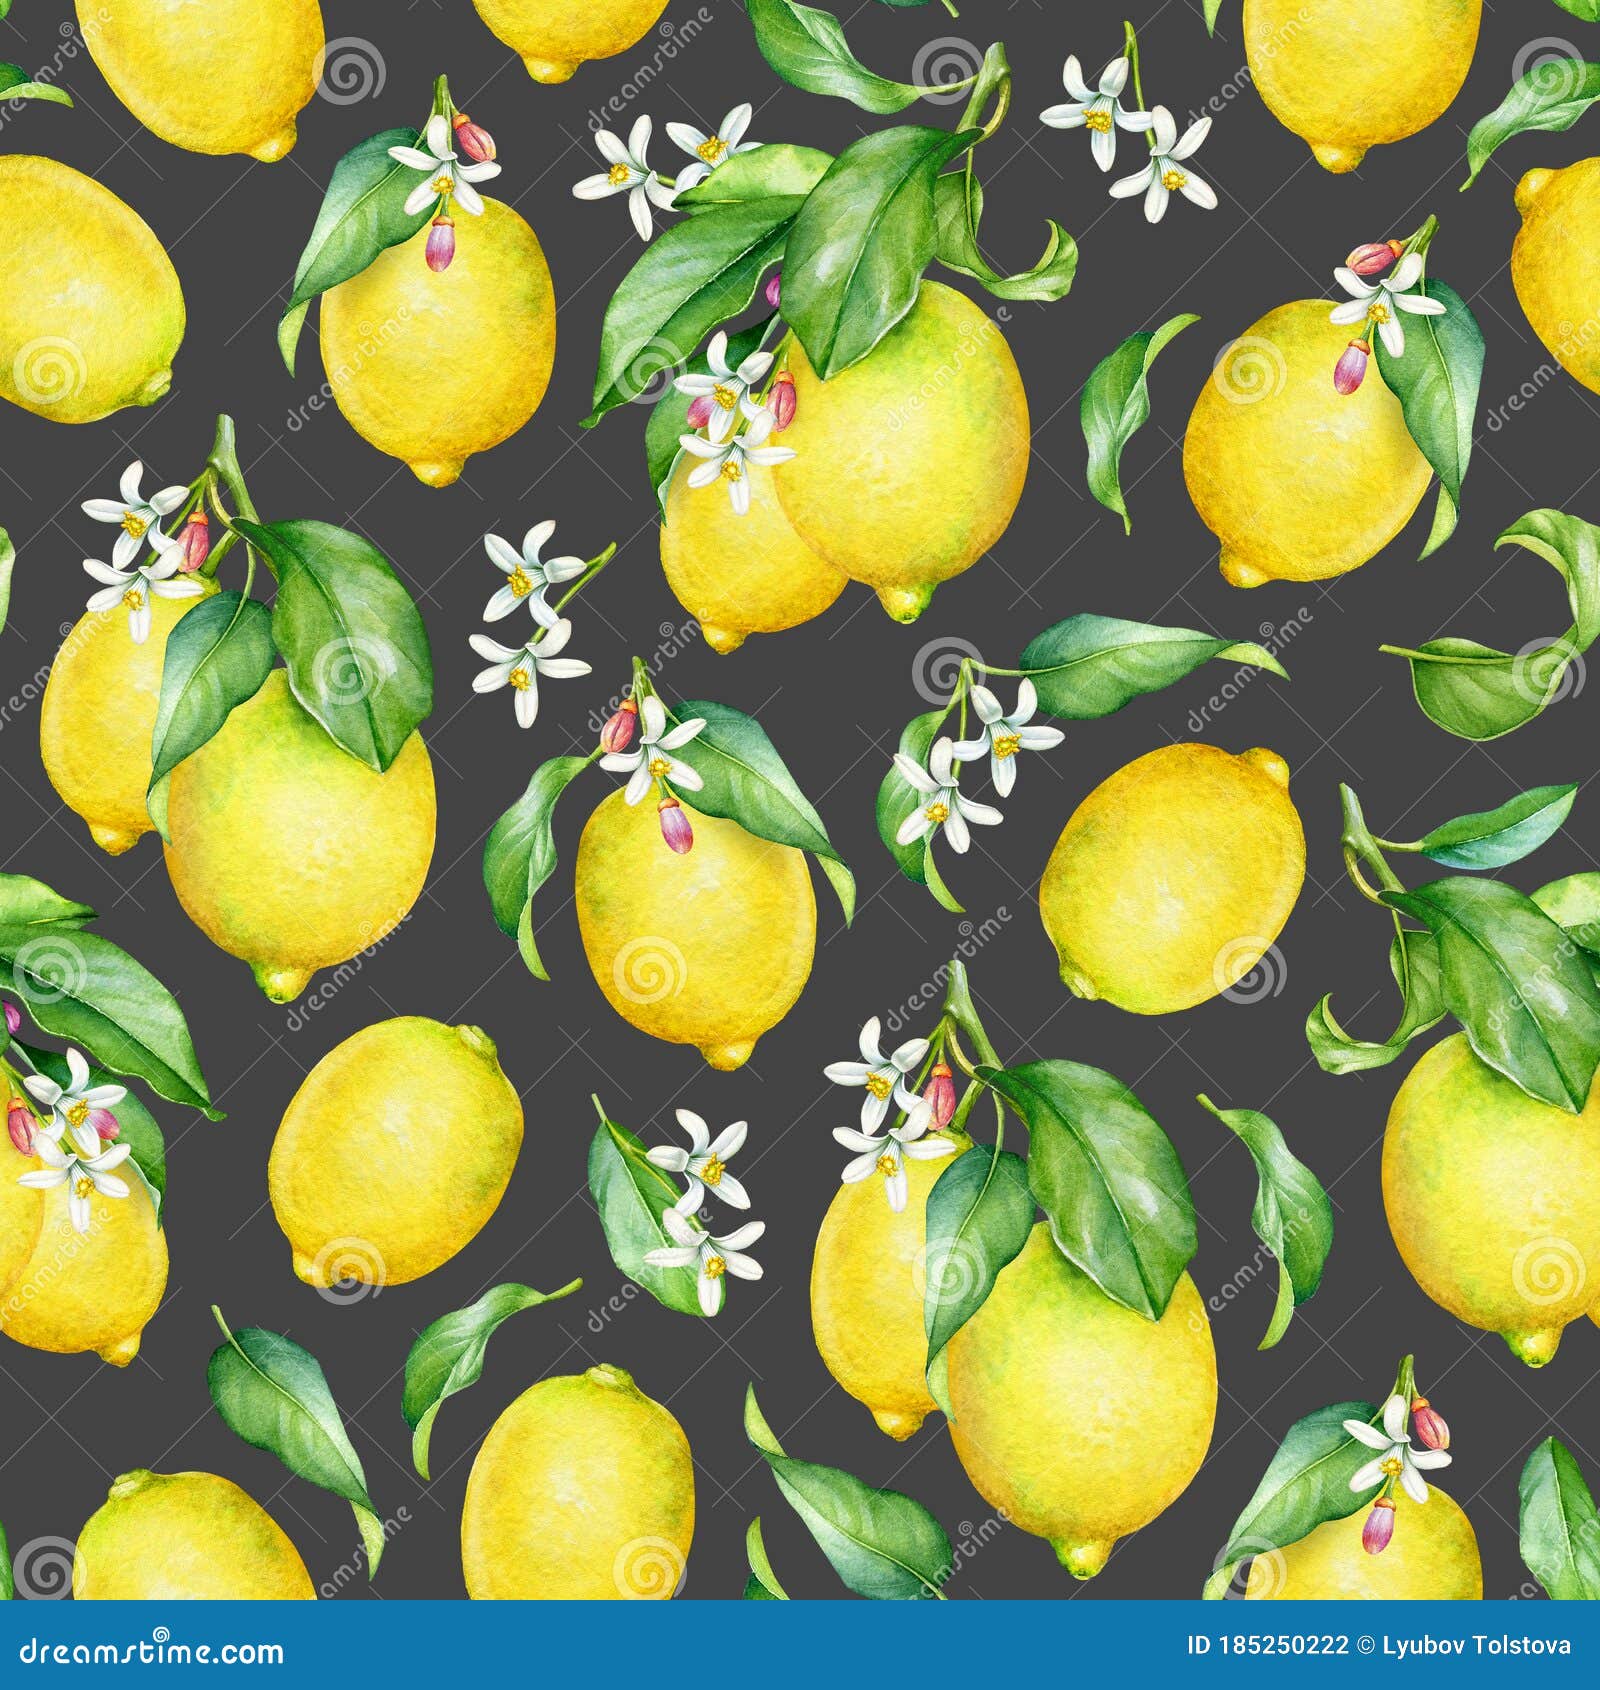 Watercolor Lemon Tree Wallpaper Yellow Lemons with Green Leaves Citrus Wallpaper Dark Floral Wallpaper Lemon Wallpaper Fruit Wallpaper